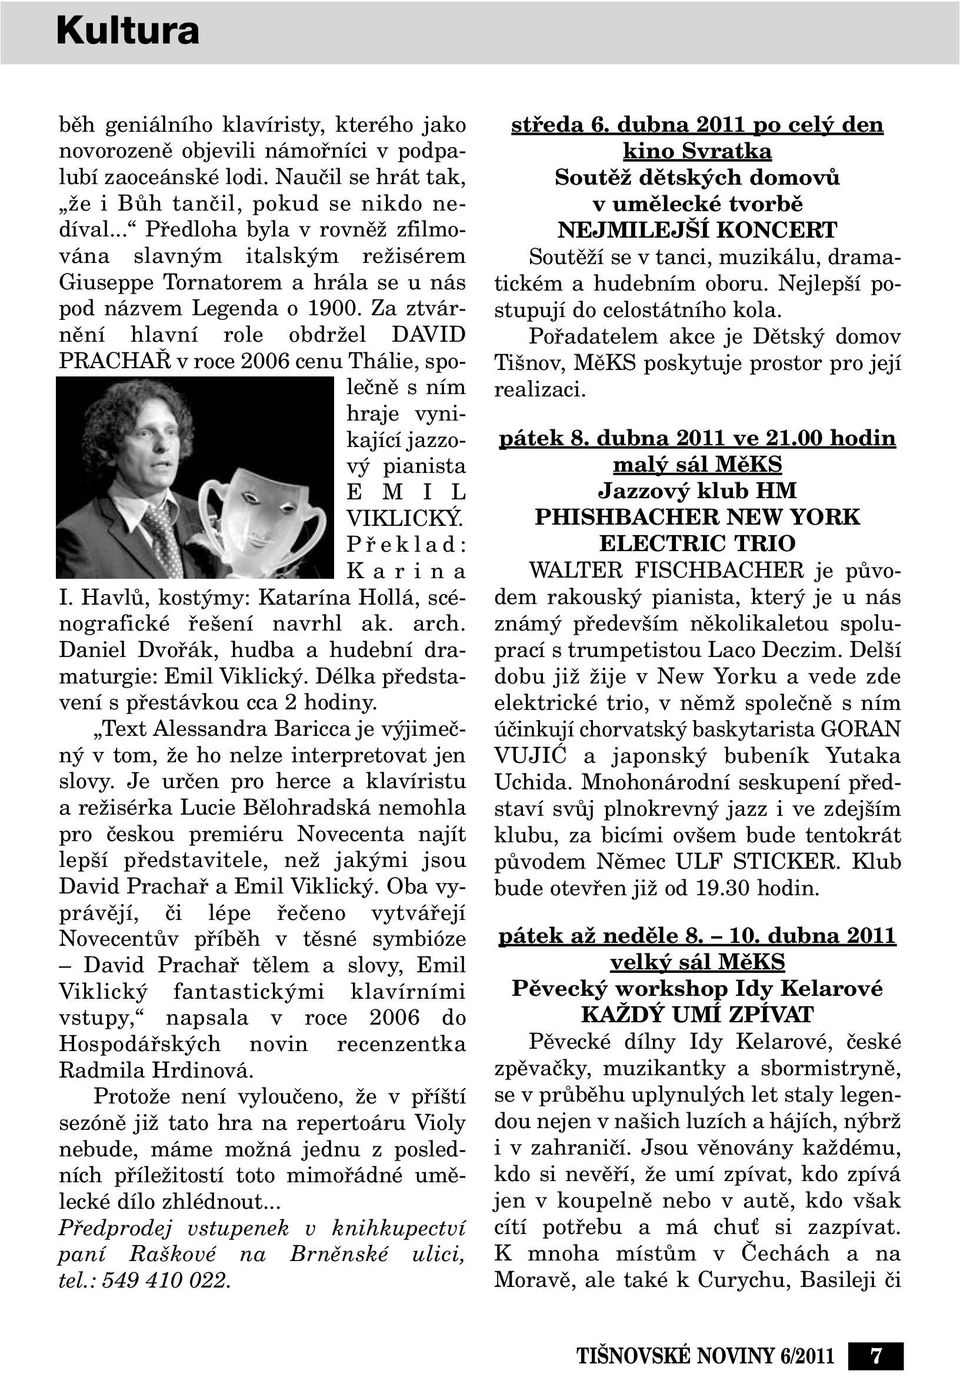 Za ztvárnûní hlavní role obdrïel DAVID PRACHA v roce 2006 cenu Thálie, spoleãnû s ním hraje vynikající jazzov pianista E M I L VIKLICK. Pfieklad: Karina I.